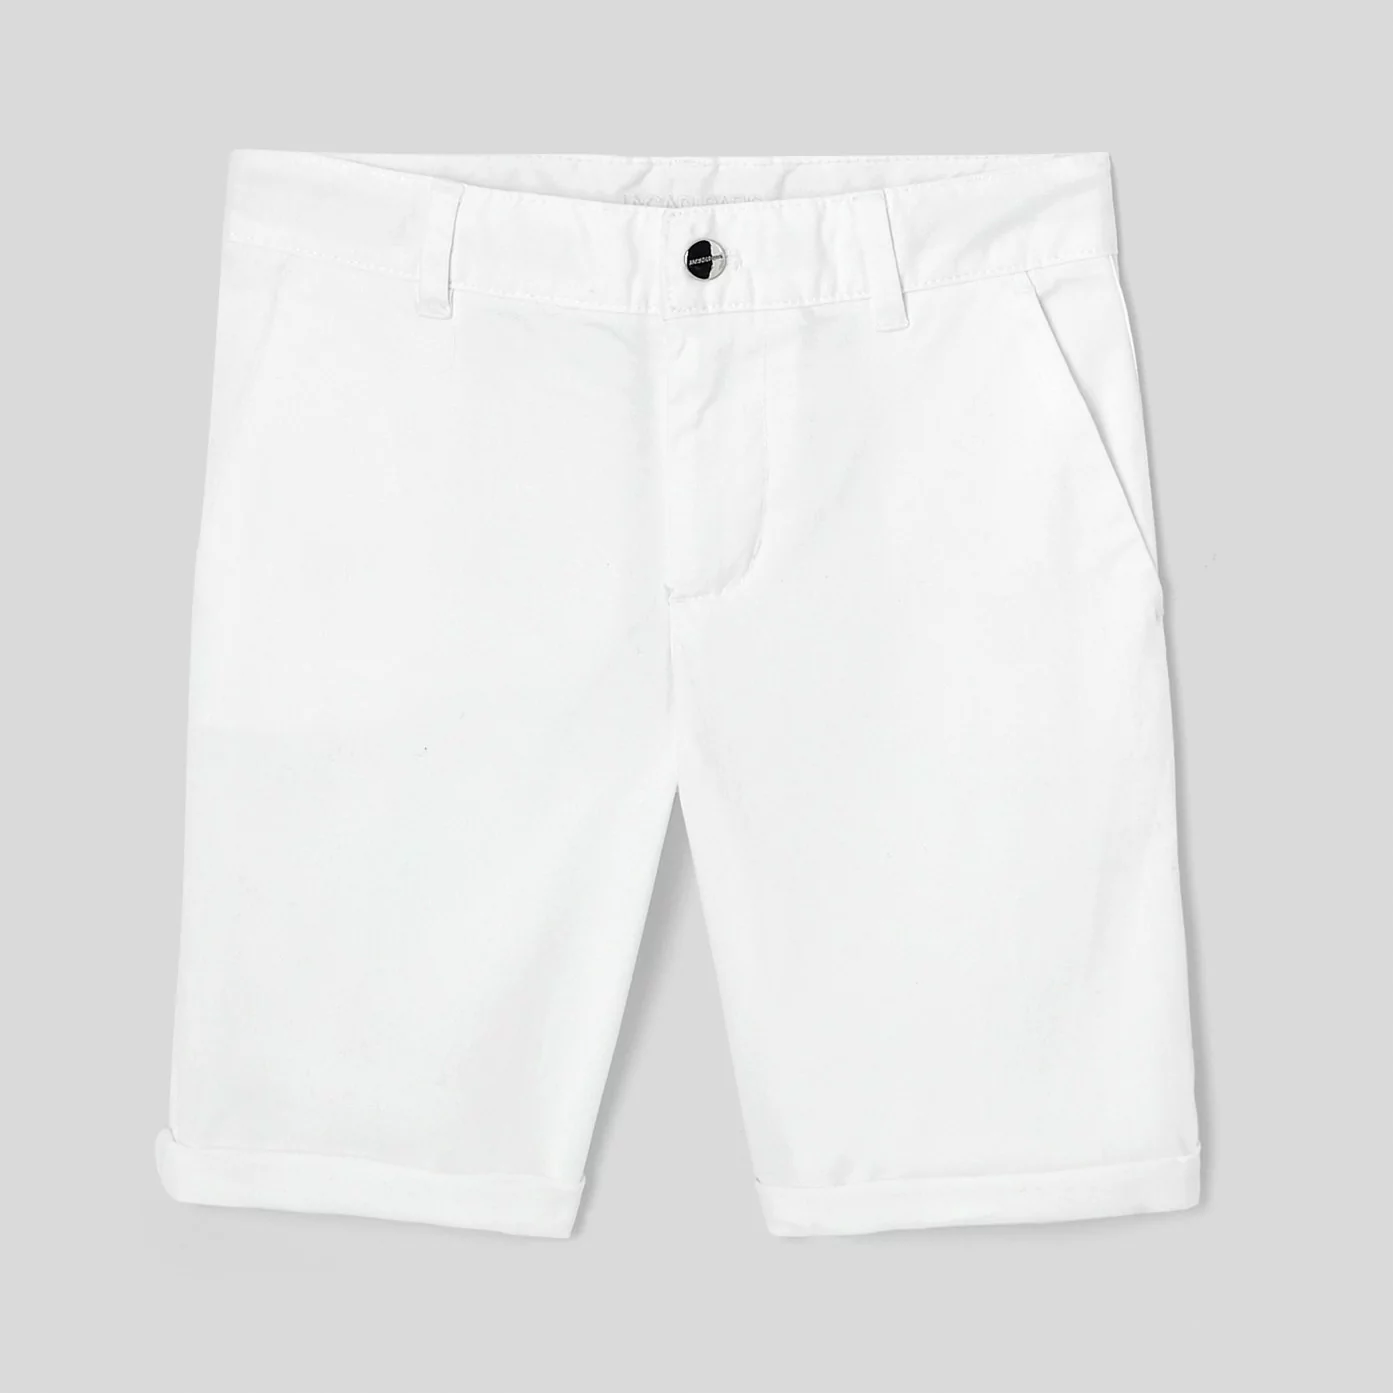 Boy slack styles bermuda shorts